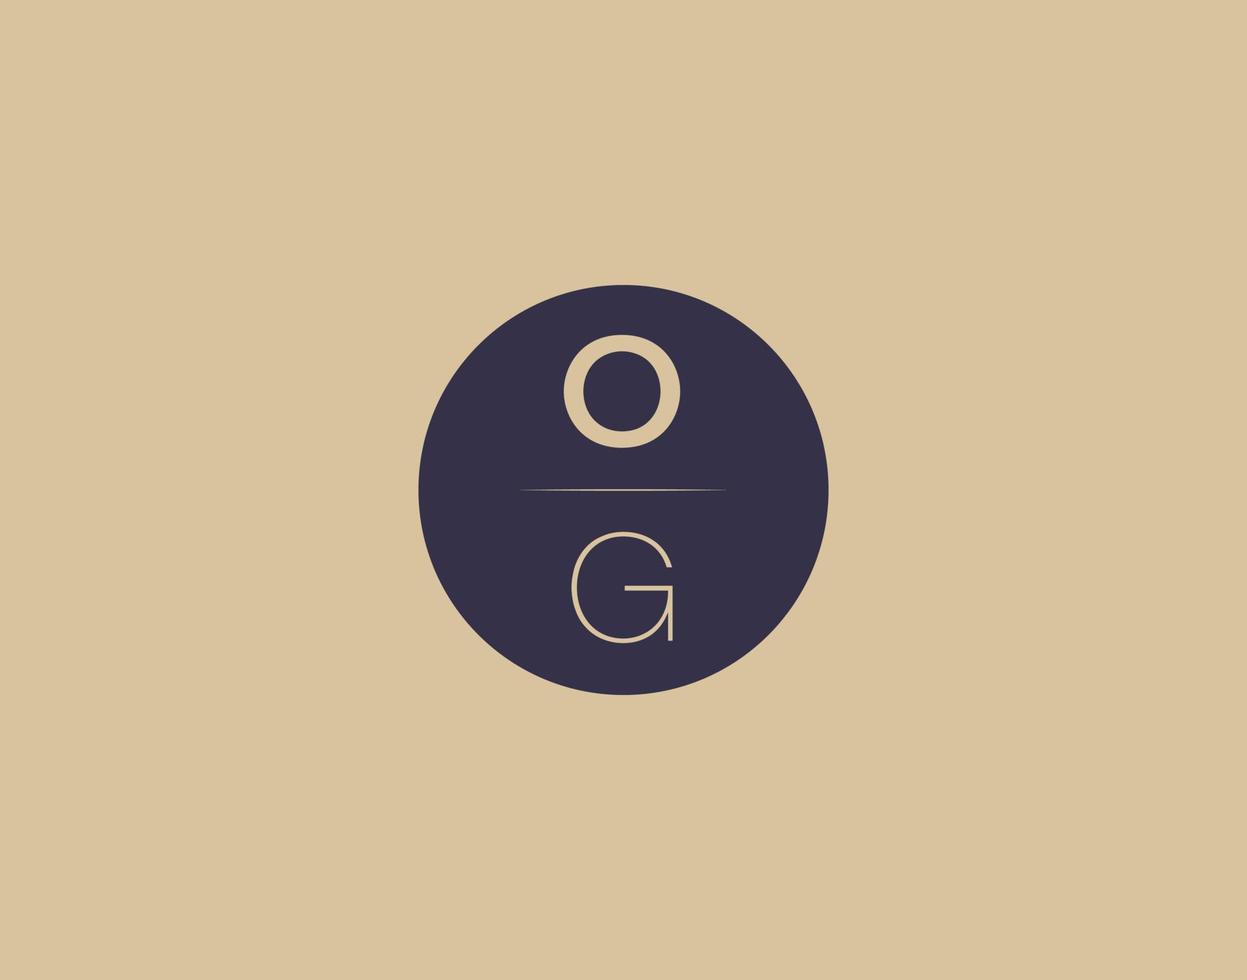 OG letter modern elegant logo design vector images